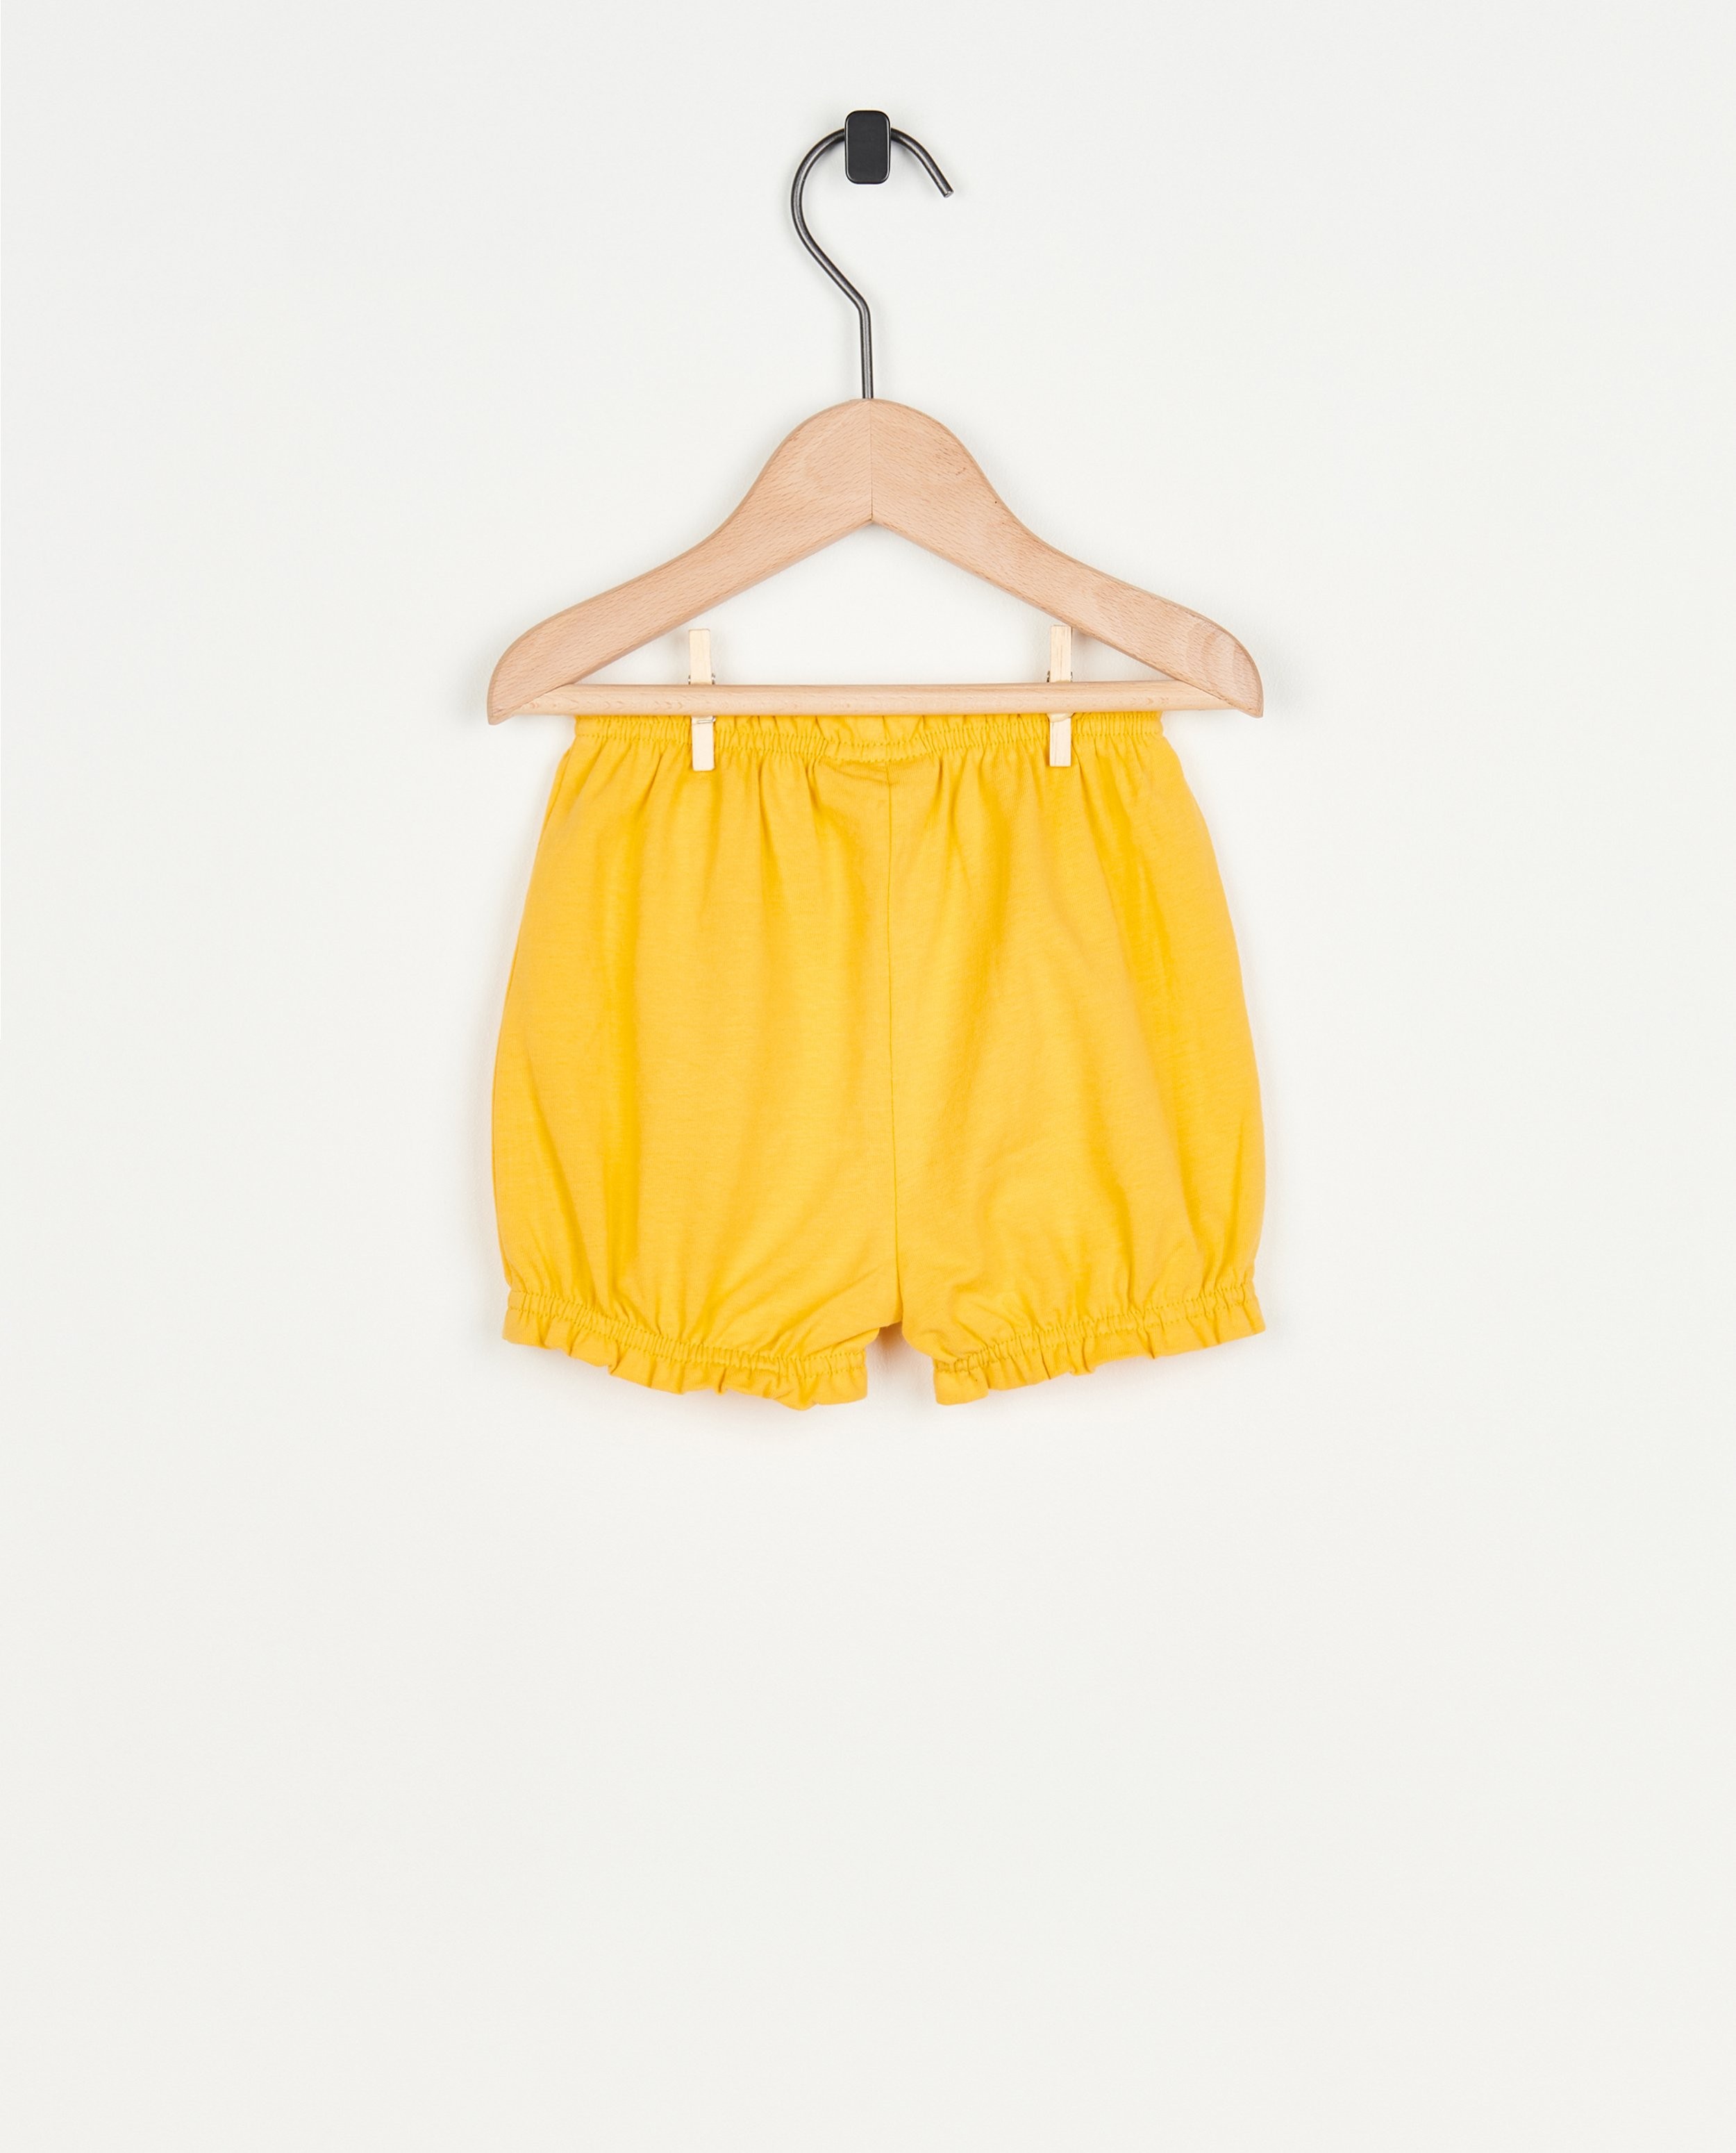 Shorts - Short jaune avec un petit nœud